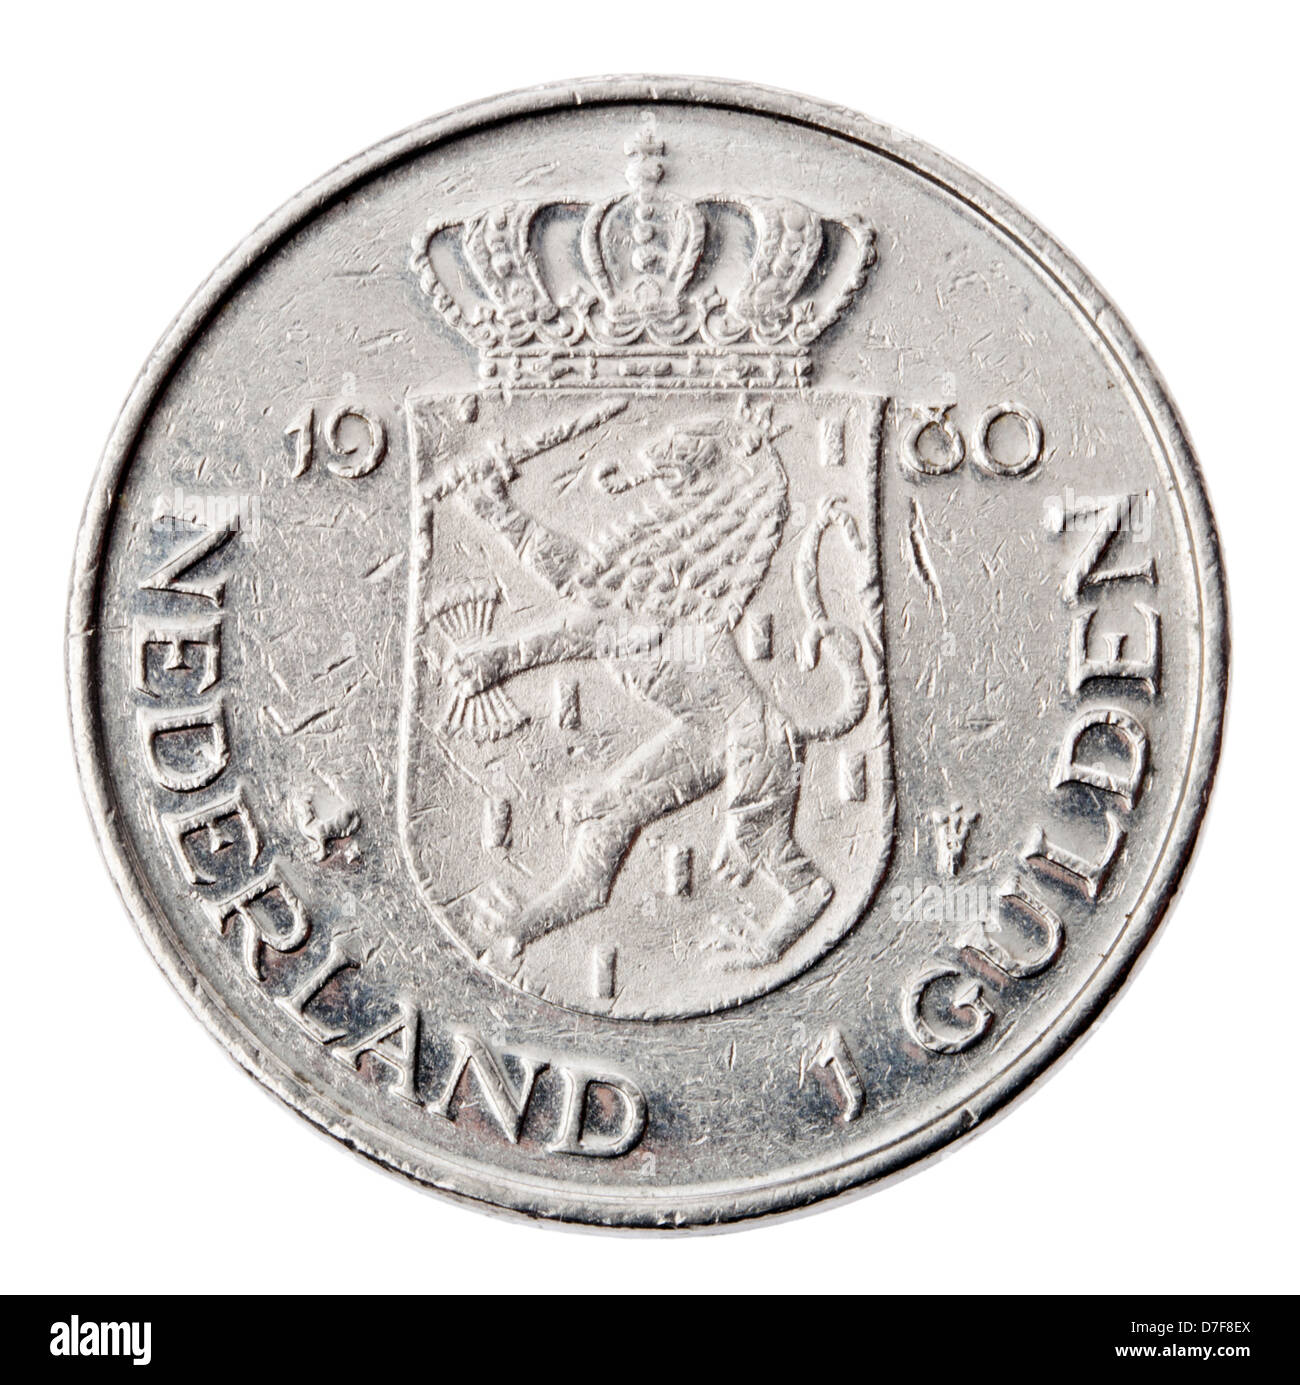 Frontaler Ansicht Rückseite (Tails) eine niederländische 1 Gulden (fl) Münze im Jahr 1980. Dargestellt ist Netherlands Mantel Arme Münze Stockfoto